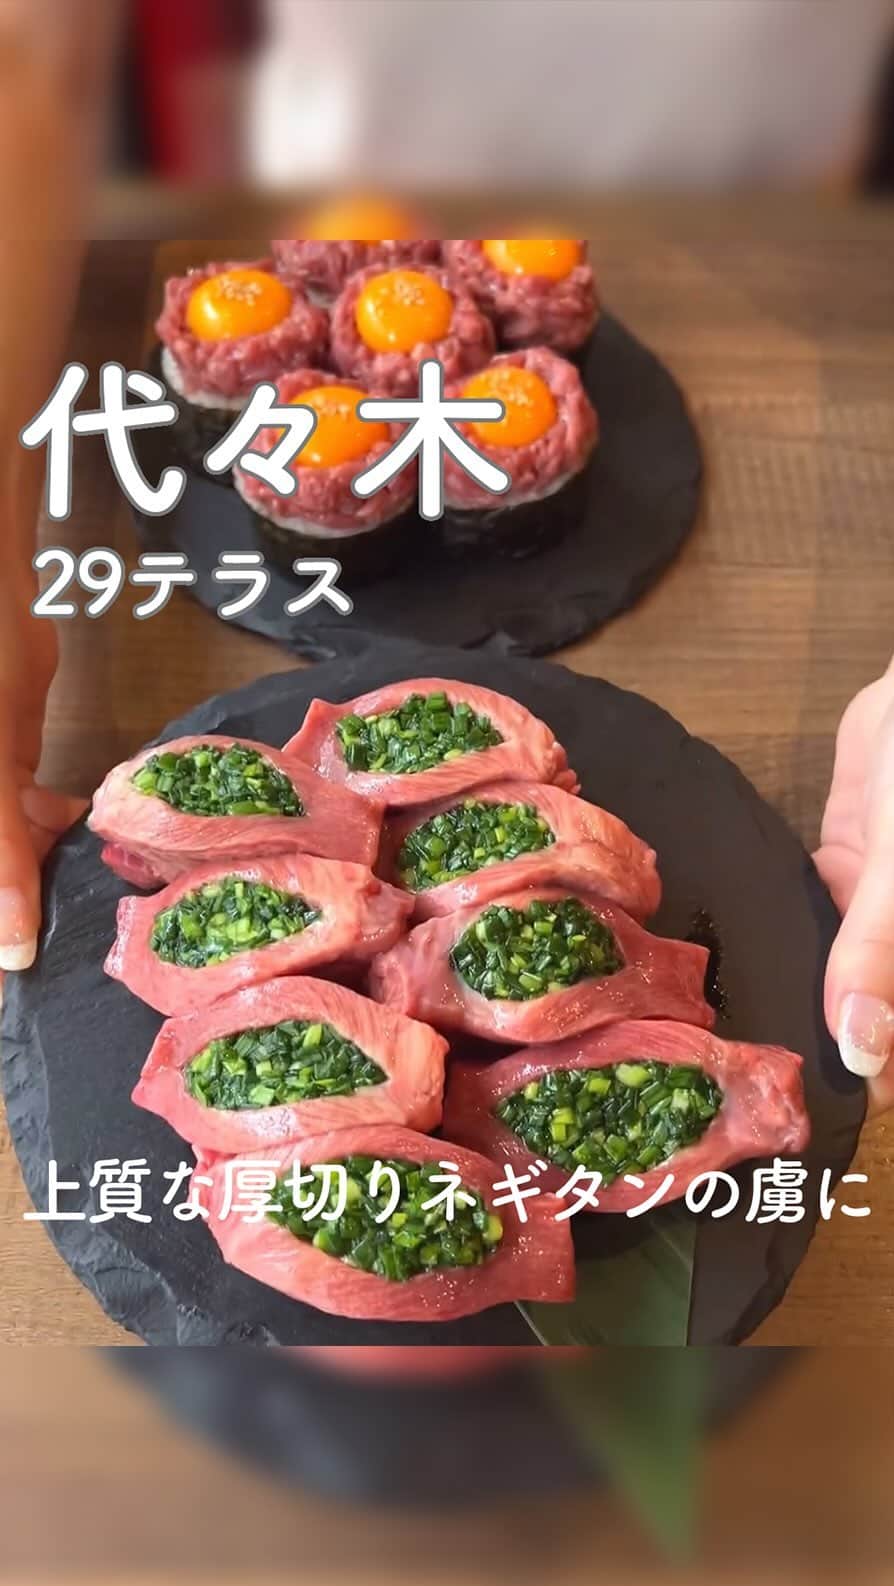 RETRIP<リトリップ>グルメのインスタグラム：「【RETRIP×代々木🍖】 こちらは、東京・代々木にある「29テラス」です。 こだわりの生野菜と銘柄牛の和牛焼肉が堪能できるこちらのお店。今回は数量限定の「厚切りネギタン」と「ユッケキンパ」をご紹介します。お店名物のタンは、味のついたネギがぎっしり詰まってコリコリ食感！スポイトに入った出汁醤油と絡めていただくユッケは、口の中でとろける絶品です🥩  [スポット情報] 📍住所：東京都渋谷区千駄ヶ谷5-22-3 仰徳ビル 1 🚃最寄り駅：代々木駅から徒歩3分 🕐営業時間：平日 17:00〜23:00、休日 11:30〜15:00、16:00〜23:00 🗓定休日：なし 📝予約：可  ※投稿時の情報となります  ・  Photo by @tabe_megumi  ______________________________  全国で話題のスイーツを紹介しているアカウントです！ 他の投稿はこちらから！ >> @retrip_gourmet  ______________________________  RETRIPでは「おでかけ」に関する様々な情報を発信しています。ぜひ他のアカウントもチェックしてくださいね！ . @retrip_news 最新のおでかけ情報を紹介 @retrip_nippon 日本の絶景を紹介 @retrip_global 海外の絶景を紹介 @retrip_gourmet 全国の話題のグルメを紹介 @retrip_cafe 全国のおしゃれなカフェを紹介 . ▼RETRIP[リトリップ]のアプリ 最新情報をまとめてご覧になりたい方には『RETRIPアプリ』がおすすめ！明日のお出かけにすぐ活かせるアイディアが盛りだくさんです✨プロフィールのURLからダウンロードできますので、ぜひご利用ください。 .  ______________________________  #retrip #リトリップ #retrip_groumet #retrip_cafe #国内グルメ #東京グルメ #国内カフェ #東京カフェ #グルメ日記 #飯テロ #食べ歩き #groumetstagram #japanesefood #カフェ #スイーツ #カフェ巡り #かふぇすたぐらむ #スイーツ好きと繋がりたい #instafood #代々木 #代々木グルメ #焼肉 #タン #厚切りネギタン #29テラス #代々木29テラス #ユッケ #キンパ」